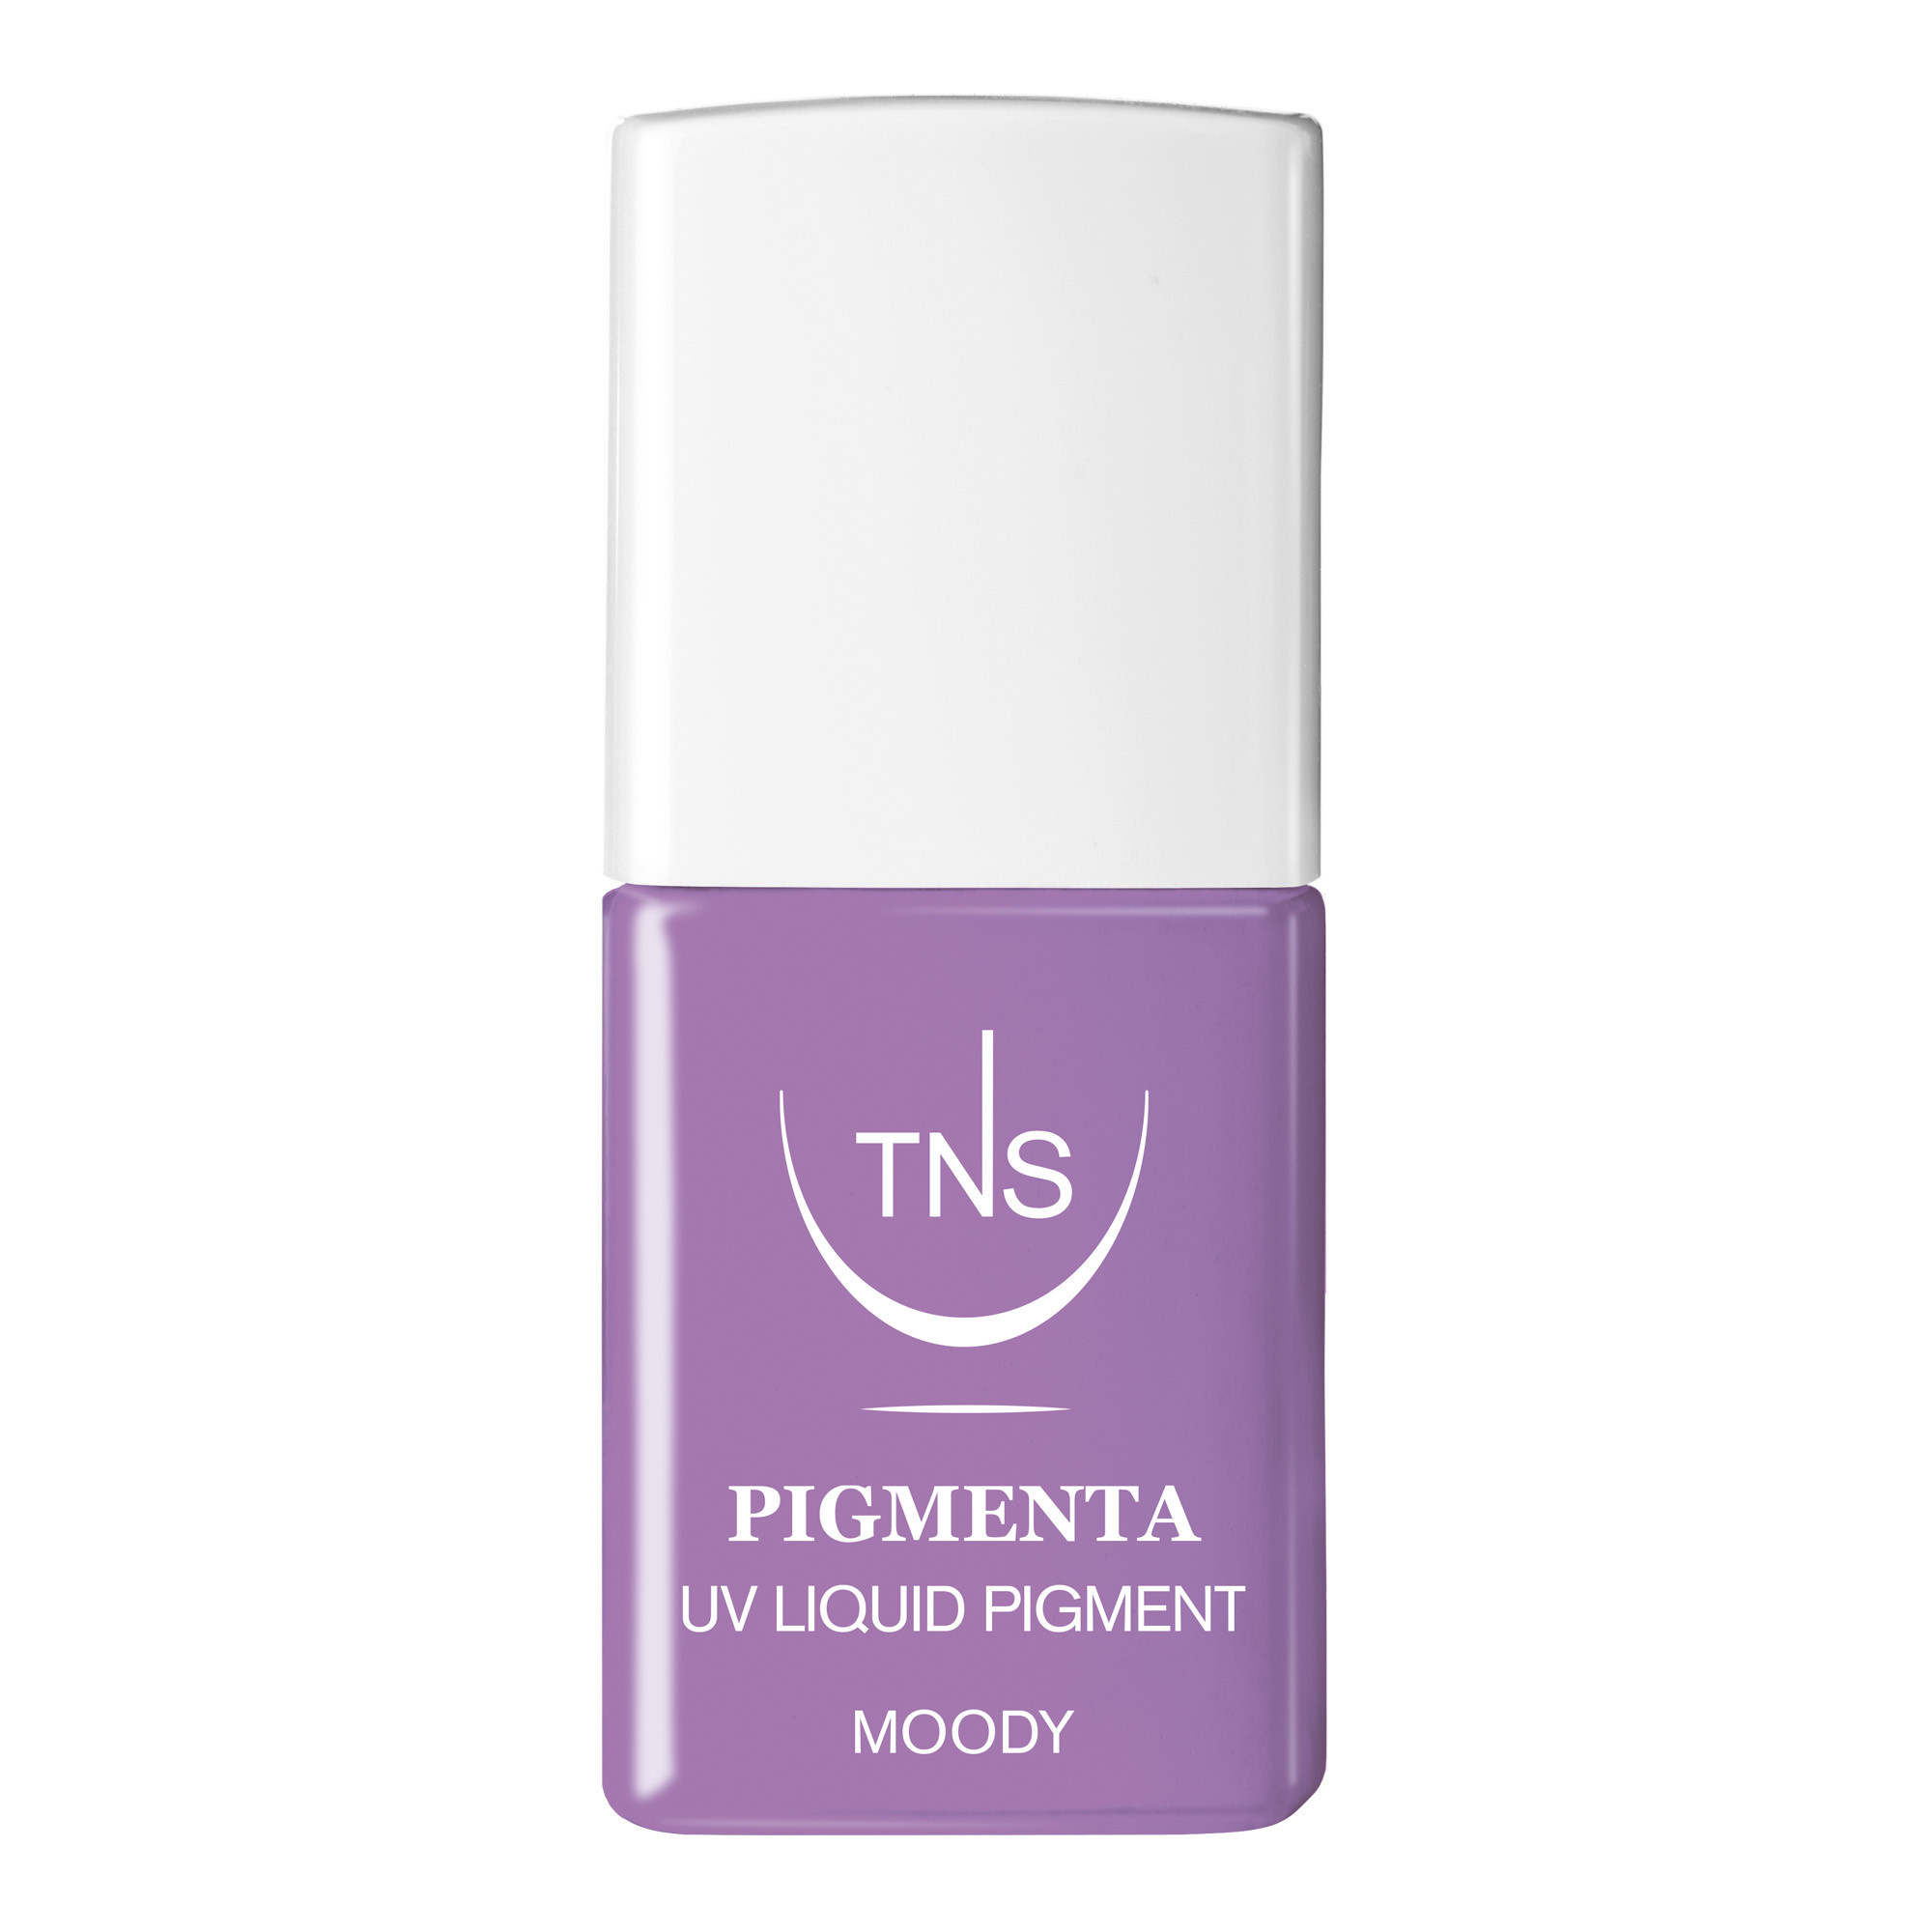 Pigmento Liquido UV Moody lilla 10 ml Pigmenta TNS